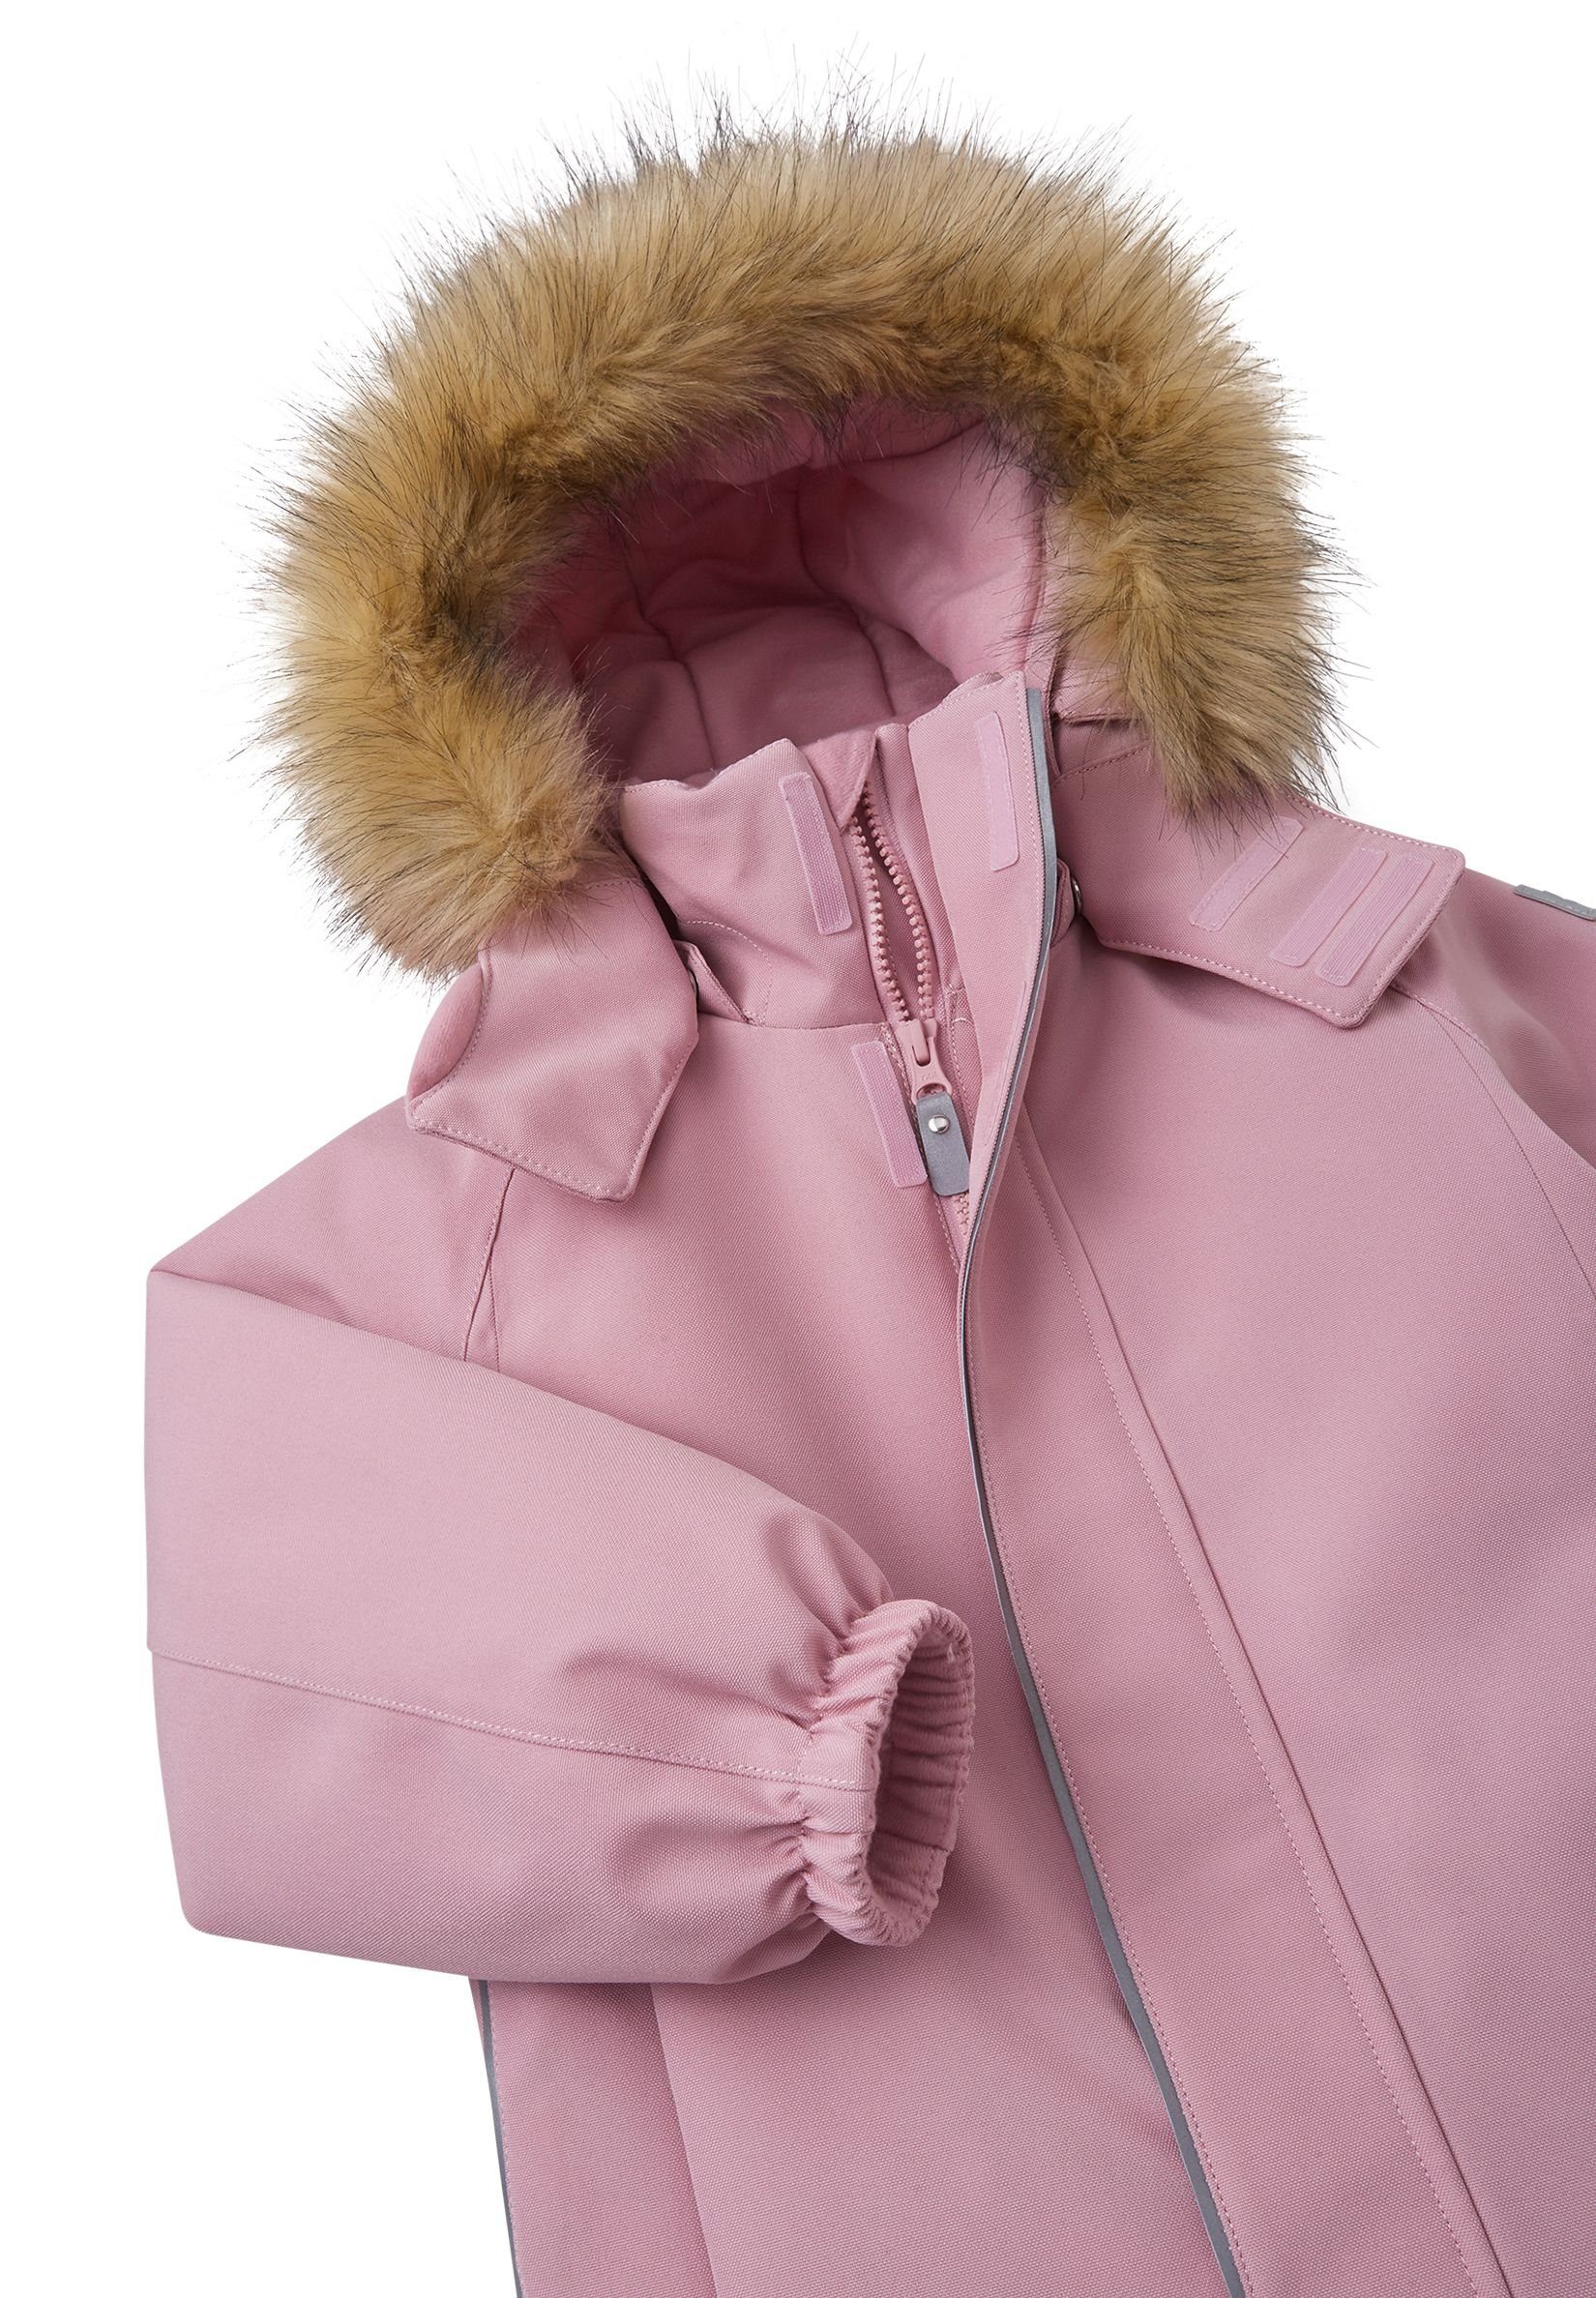 wärmend Schneeoverall und atmungsaktiv und Haupt- Grey Pink bluesign®-zertifiziertes reima wasserdicht, Futtermaterial Trondheim